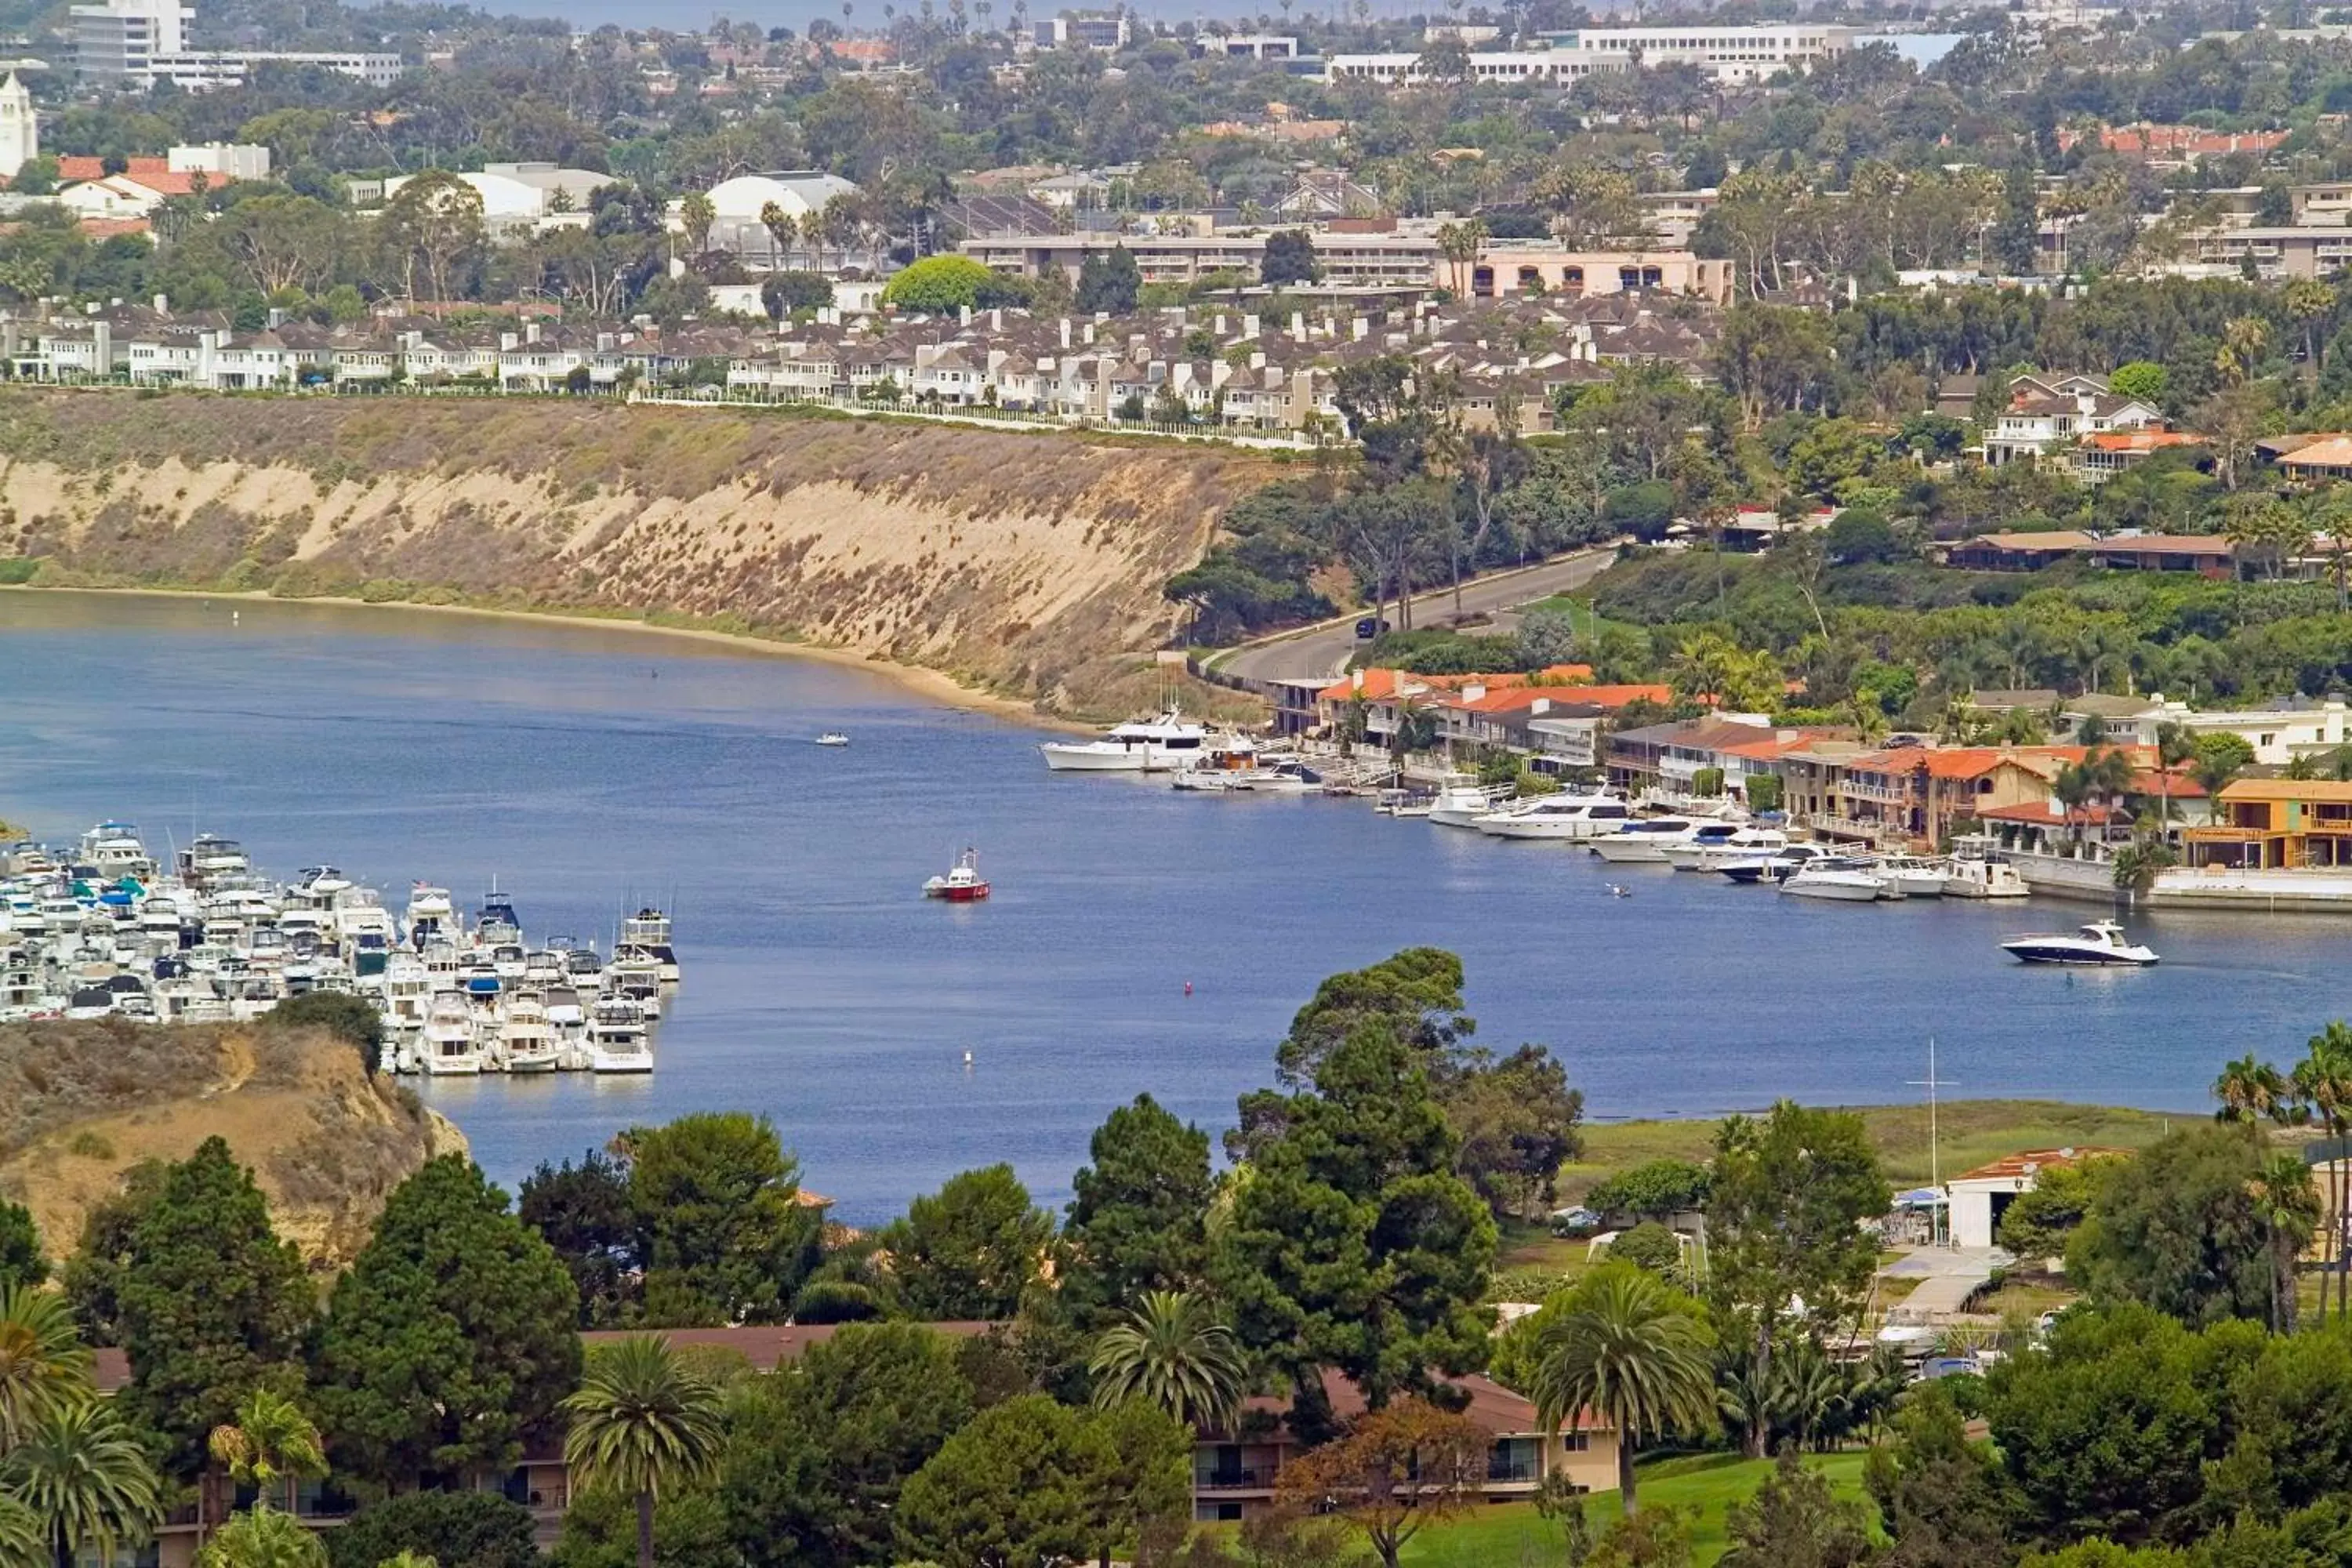 Location, Bird's-eye View in Hyatt Regency Newport Beach